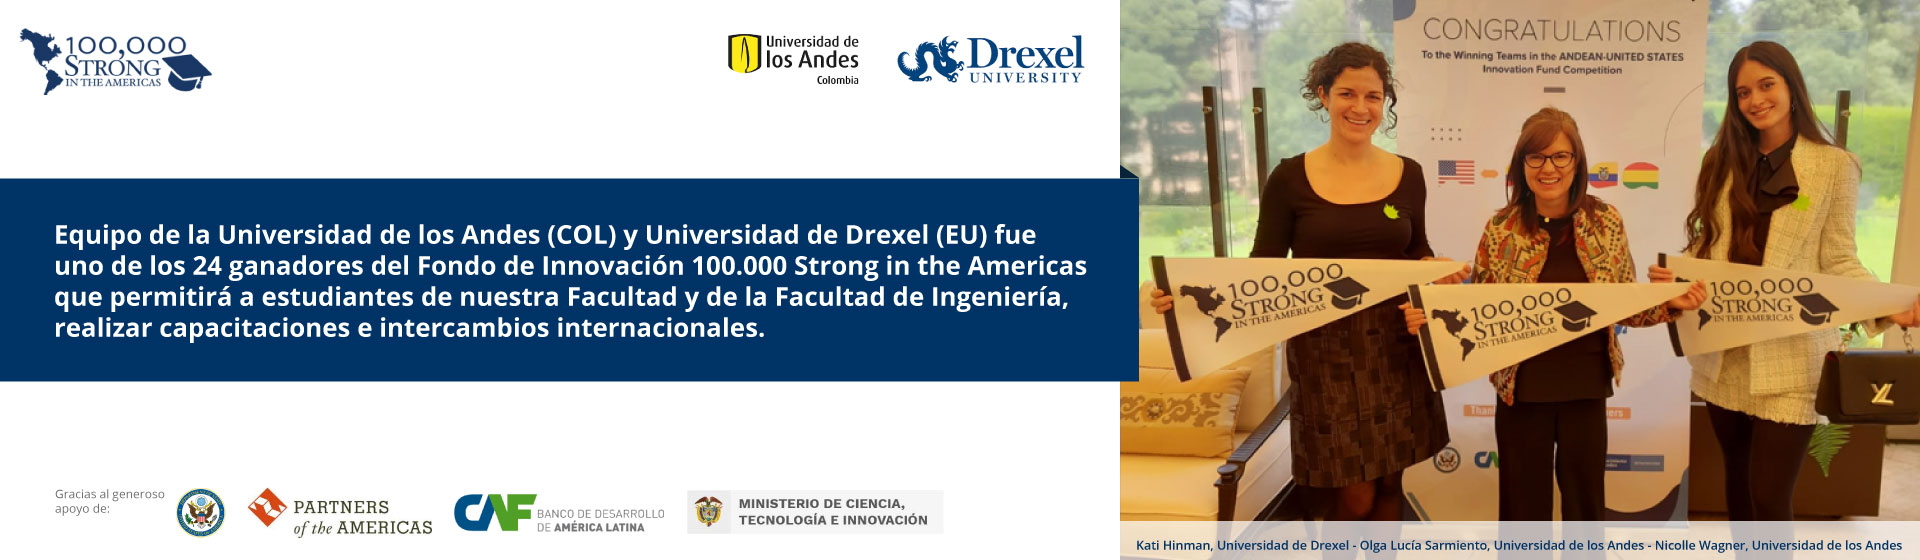 Fondo de Innovación 100.000 Strong in the Americas 